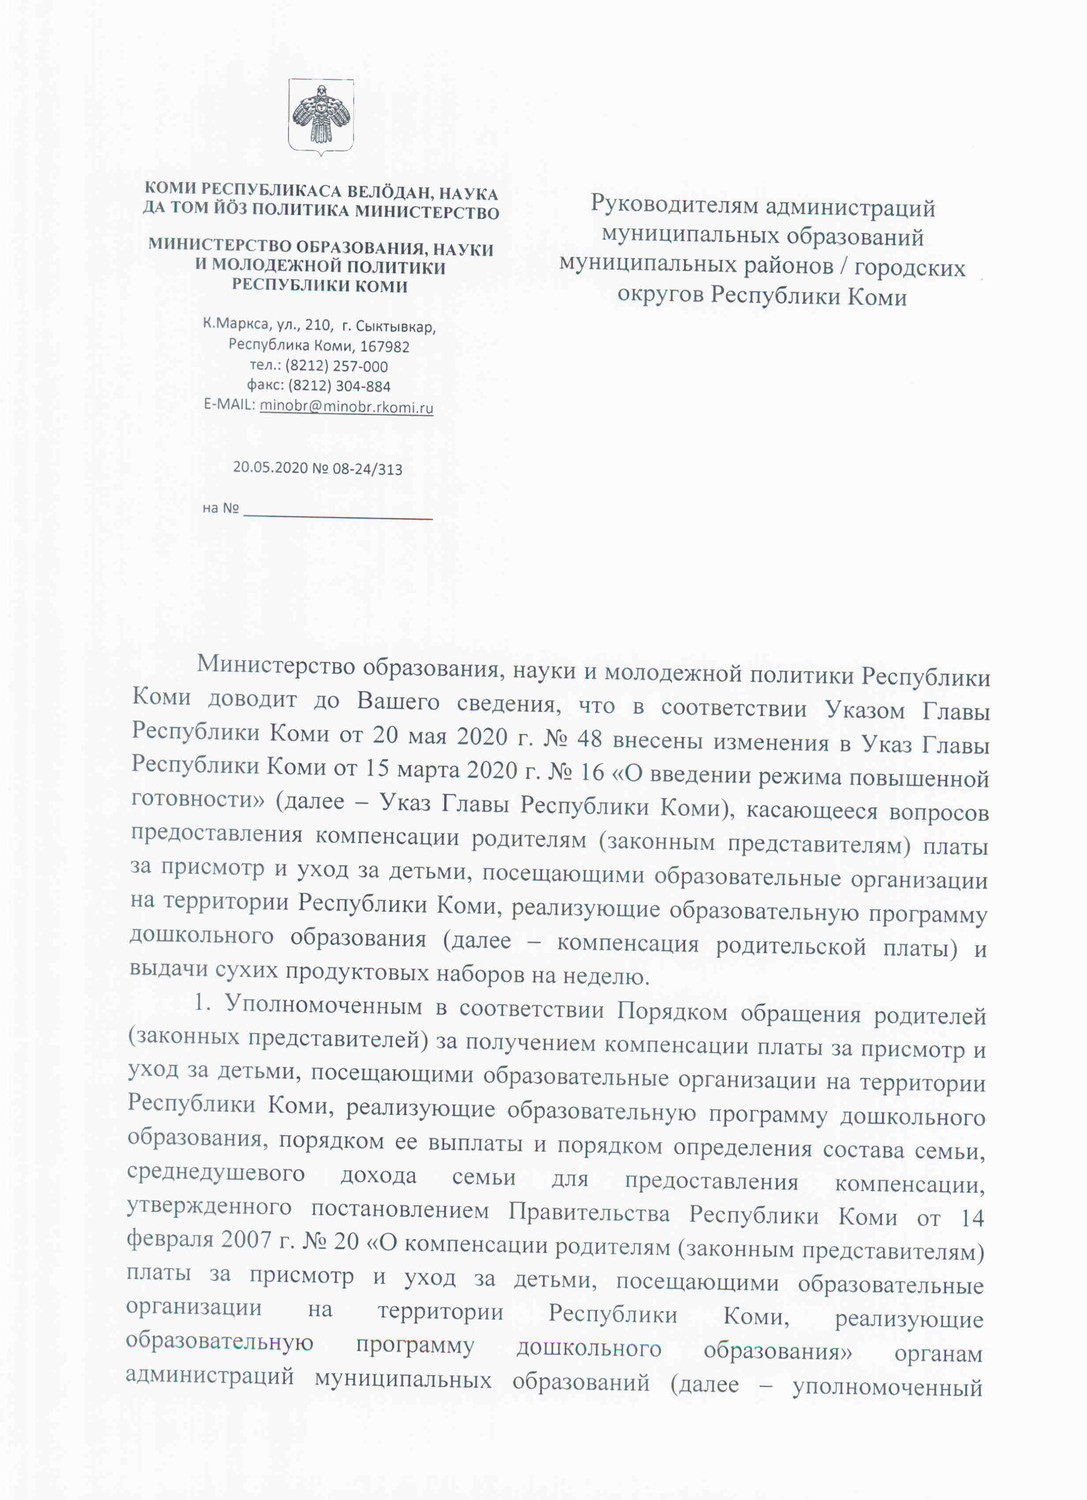 Указ Главы Республики Коми от 20 мая 2020 г. №48